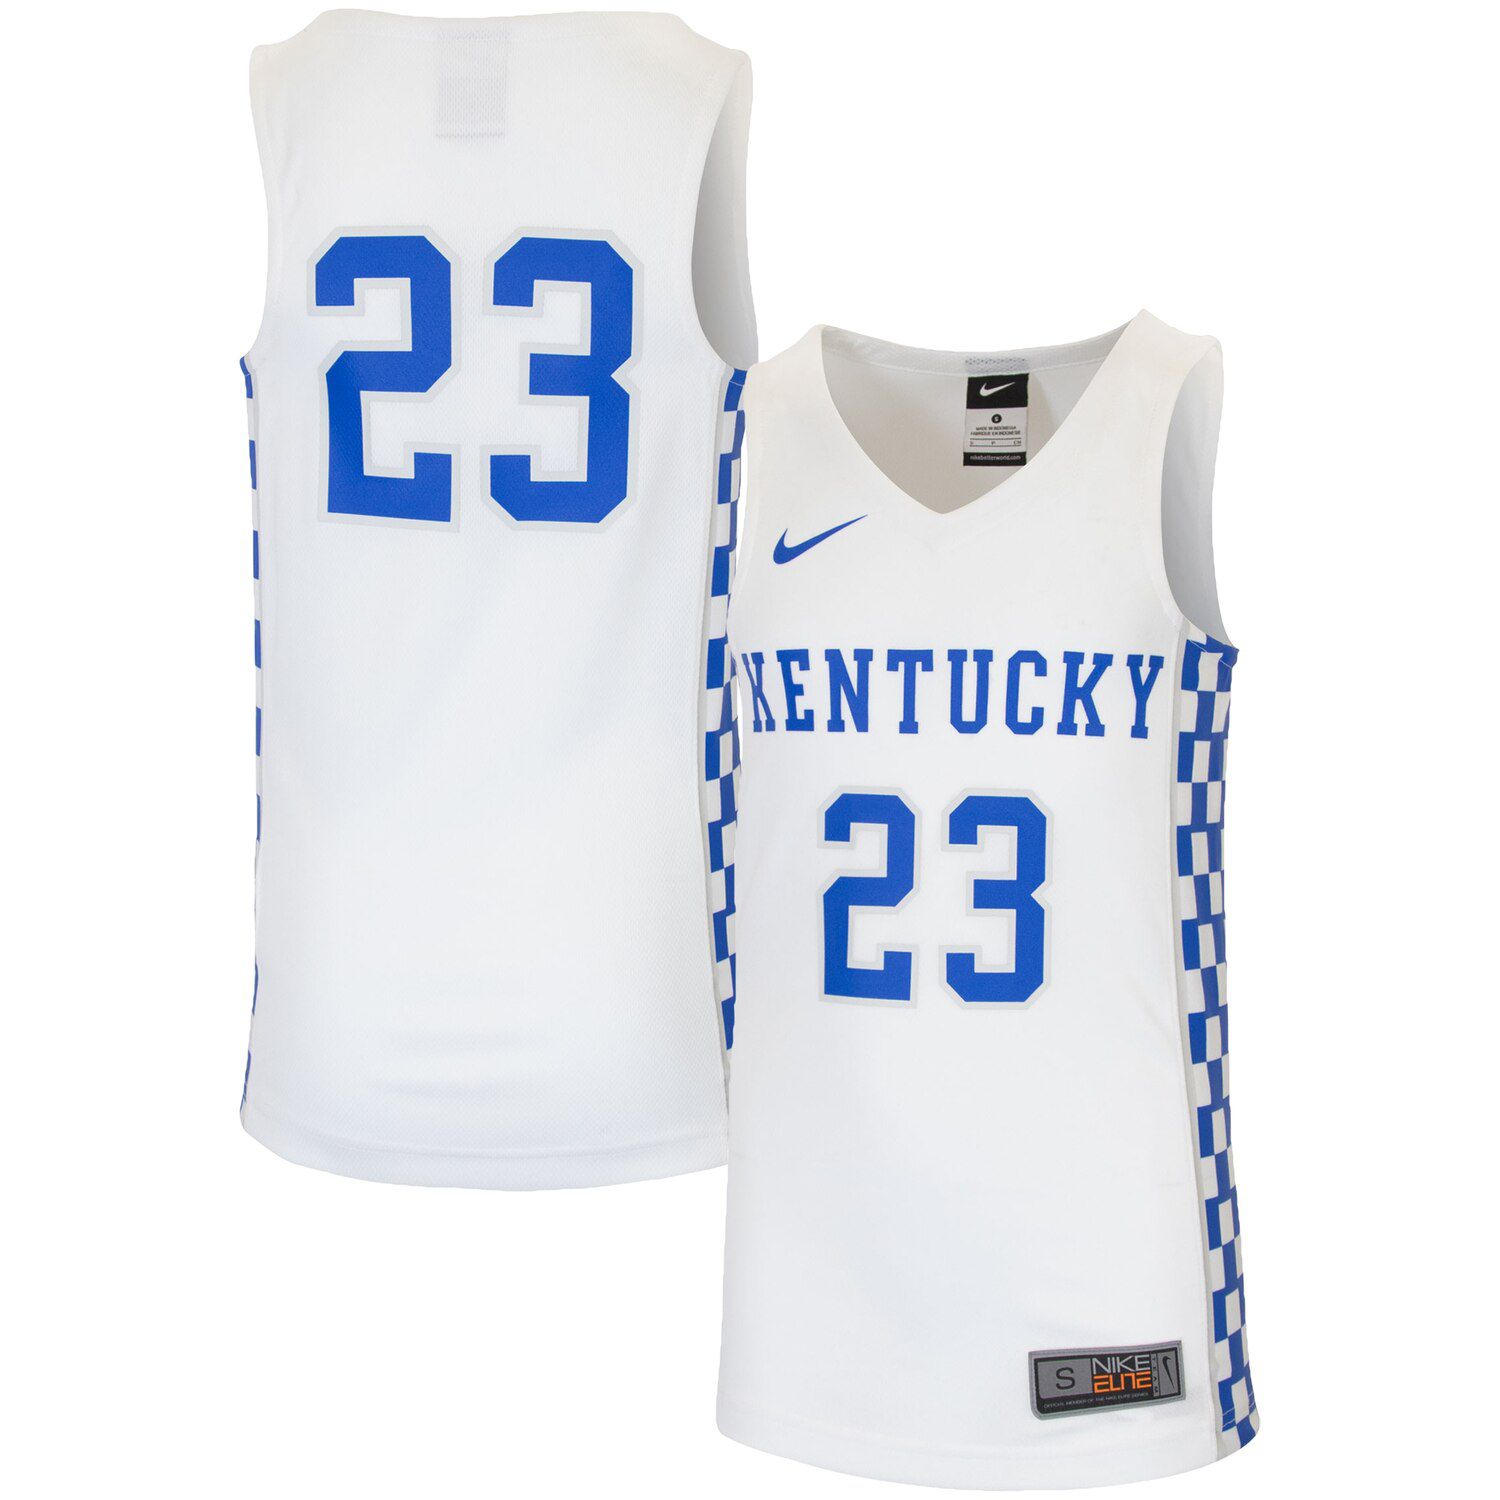 Kentucky Wildcats Replica Basketball Jersey